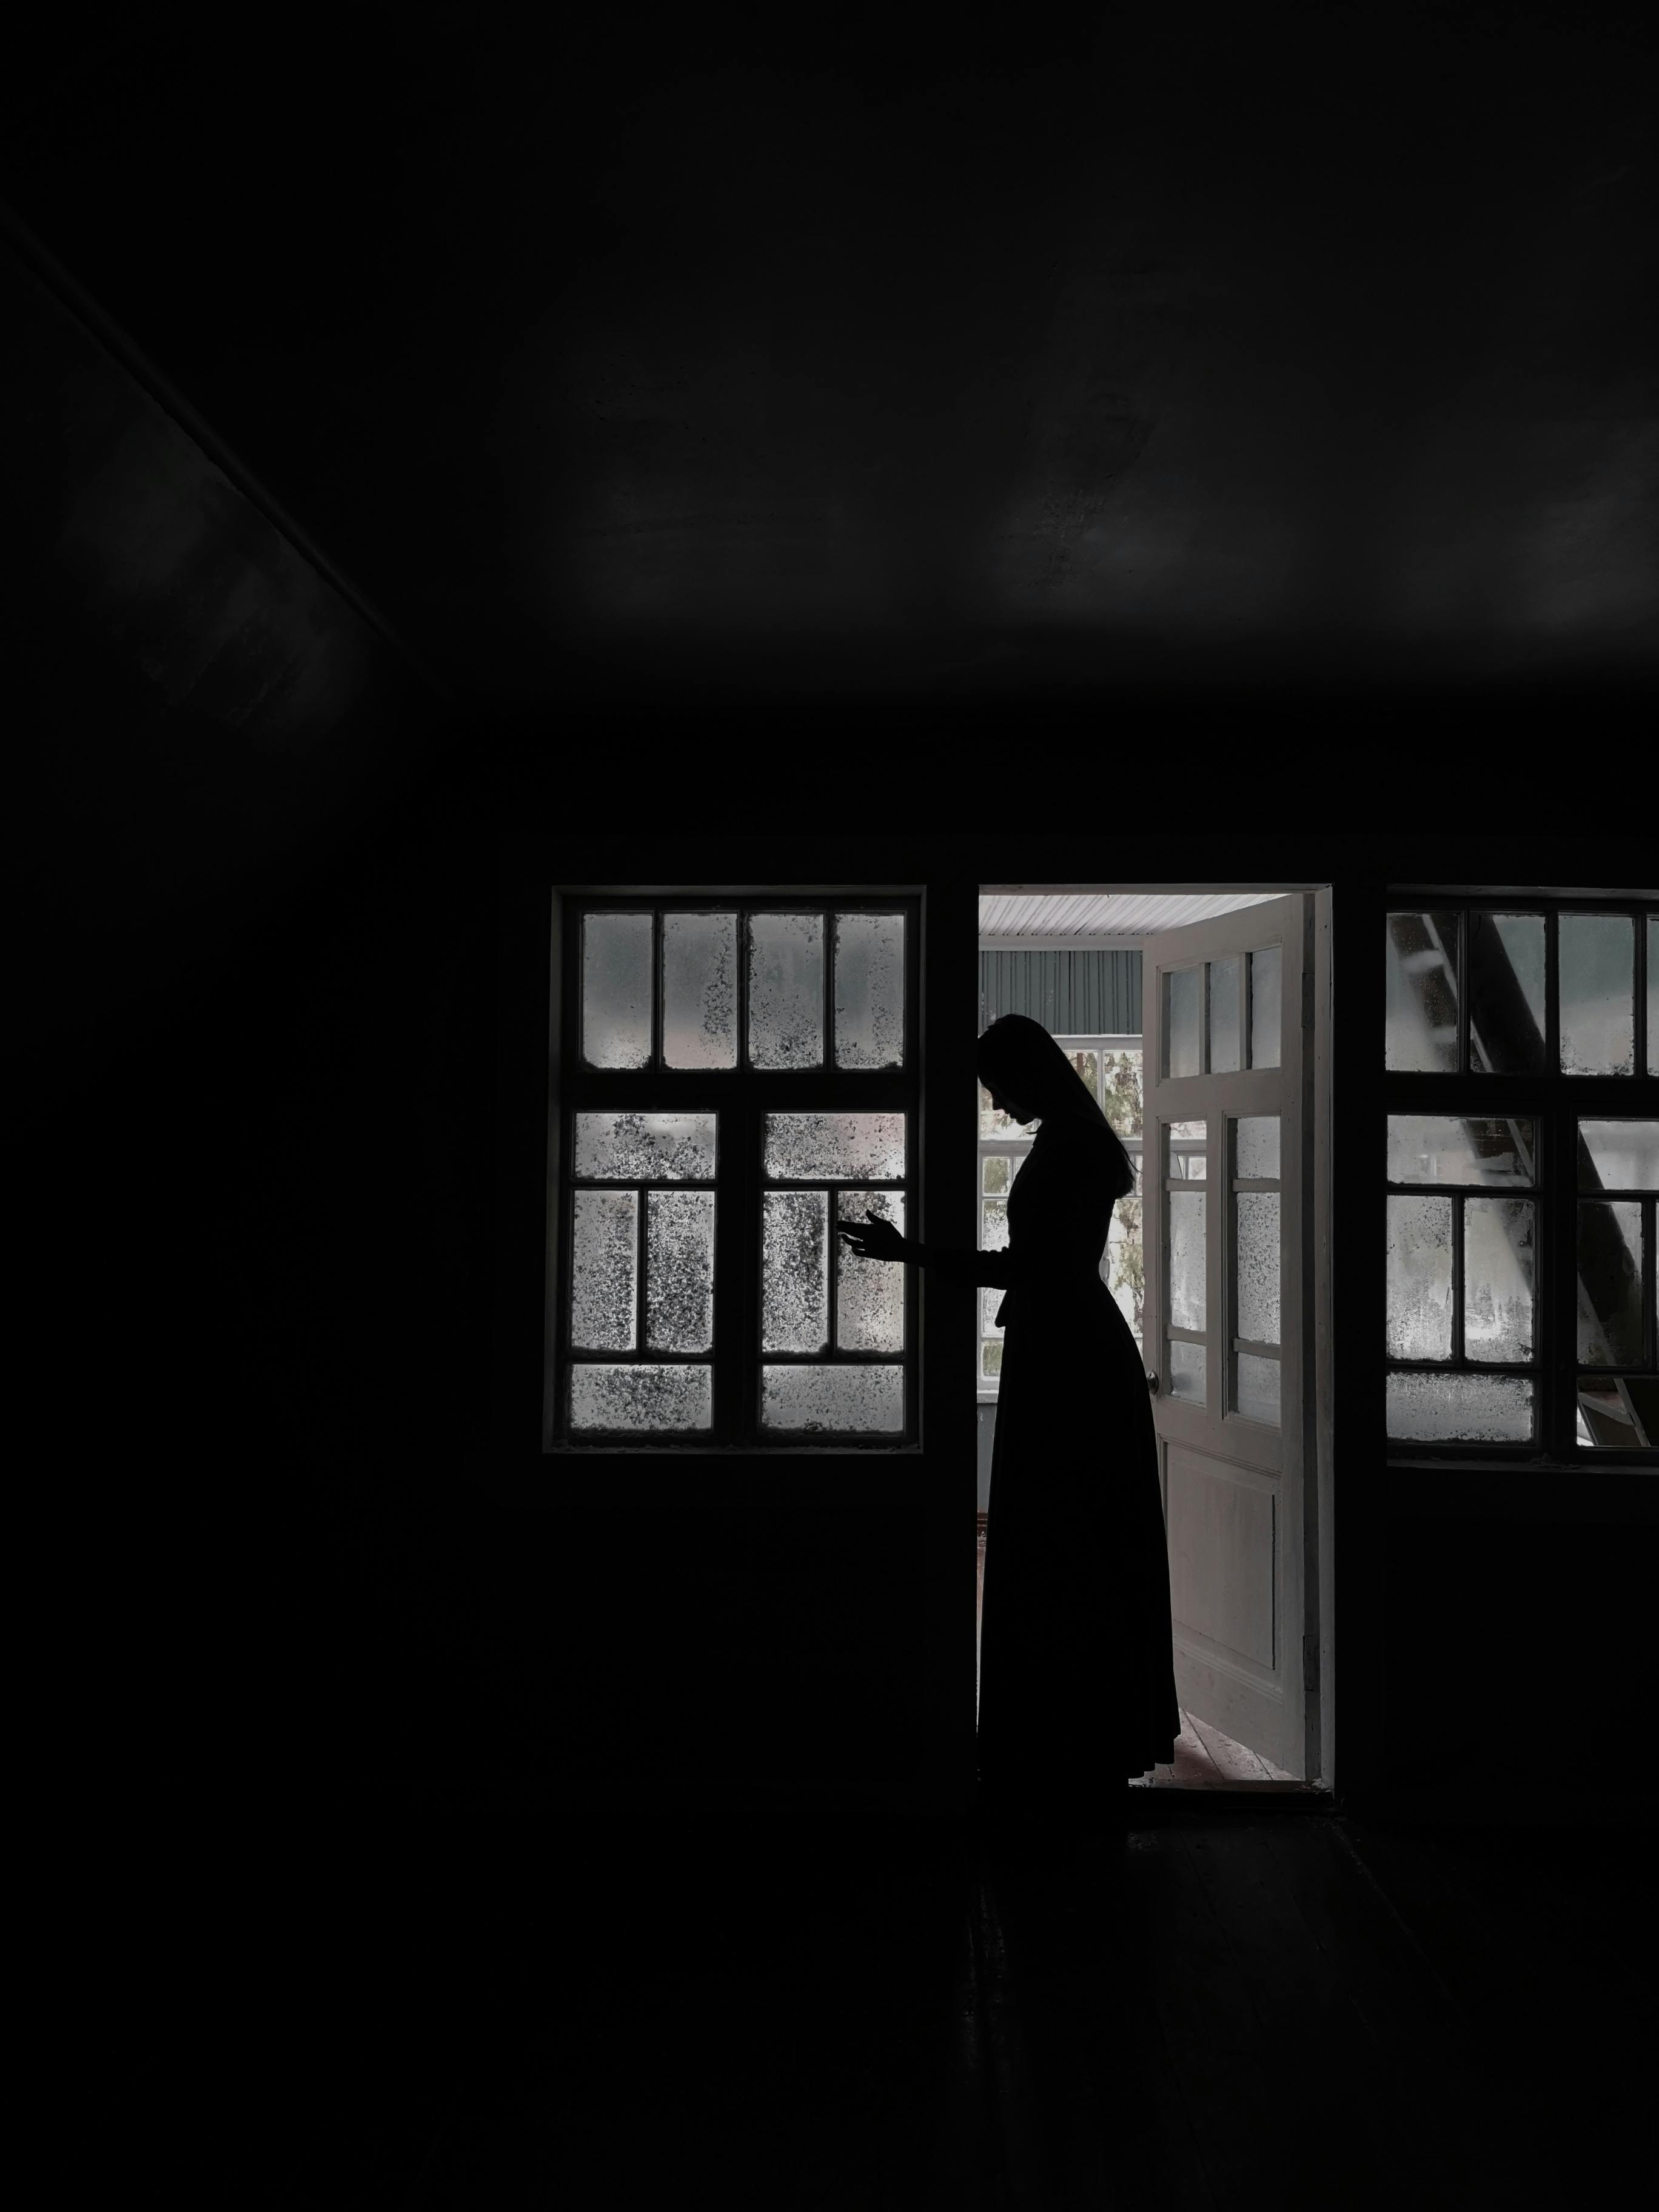 Une femme en robe longue debout dans l'embrasure d'une porte | Source : Pexels